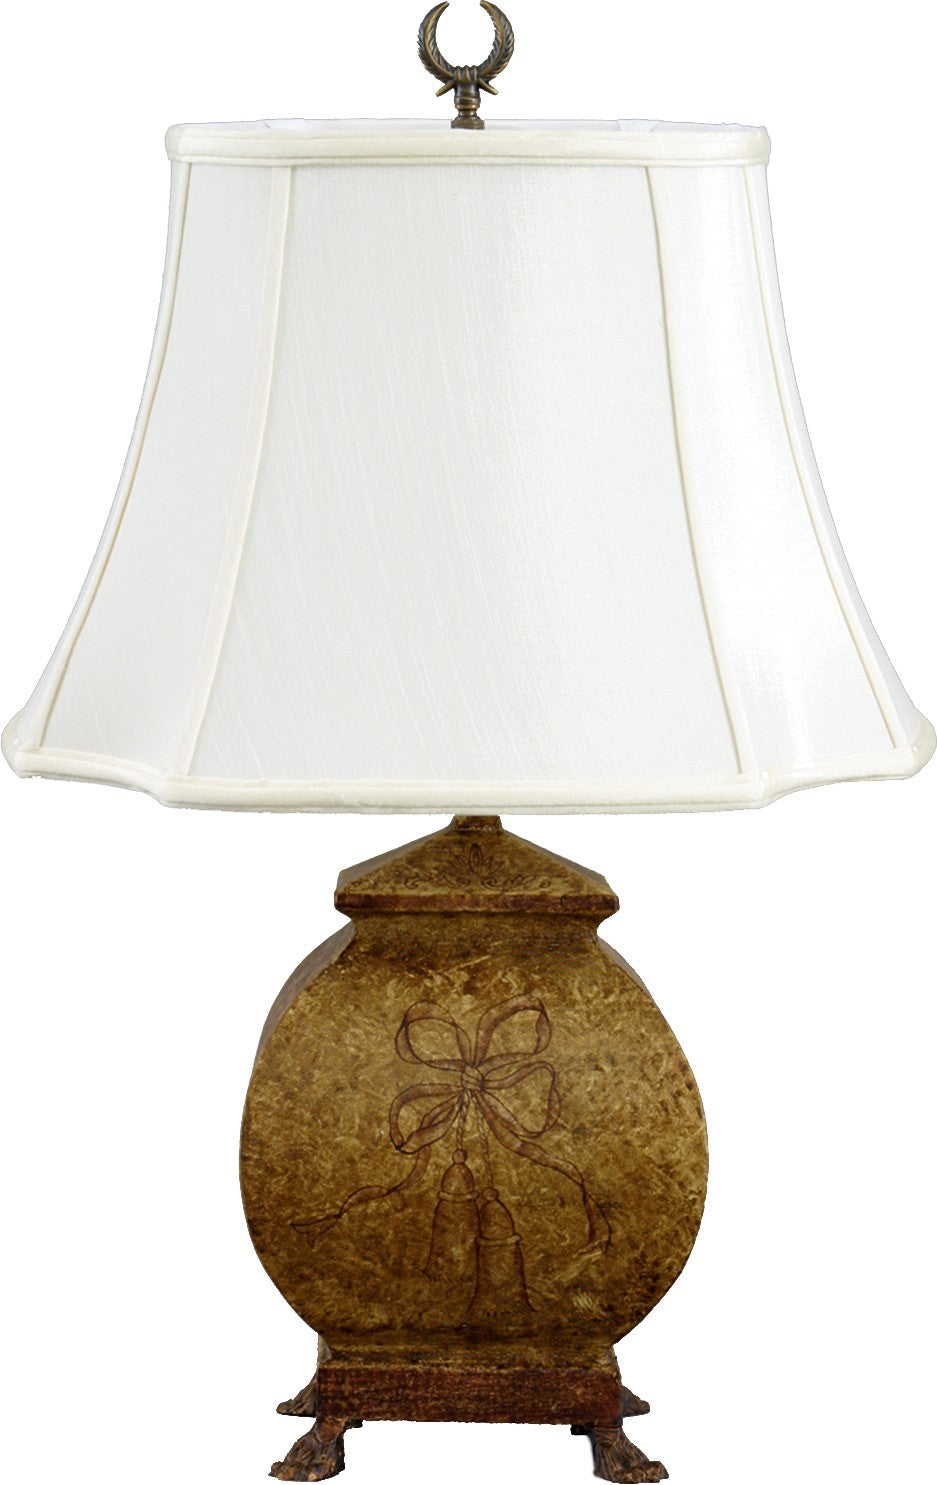 Lovecup Tole Tassel Table Lamp 2616